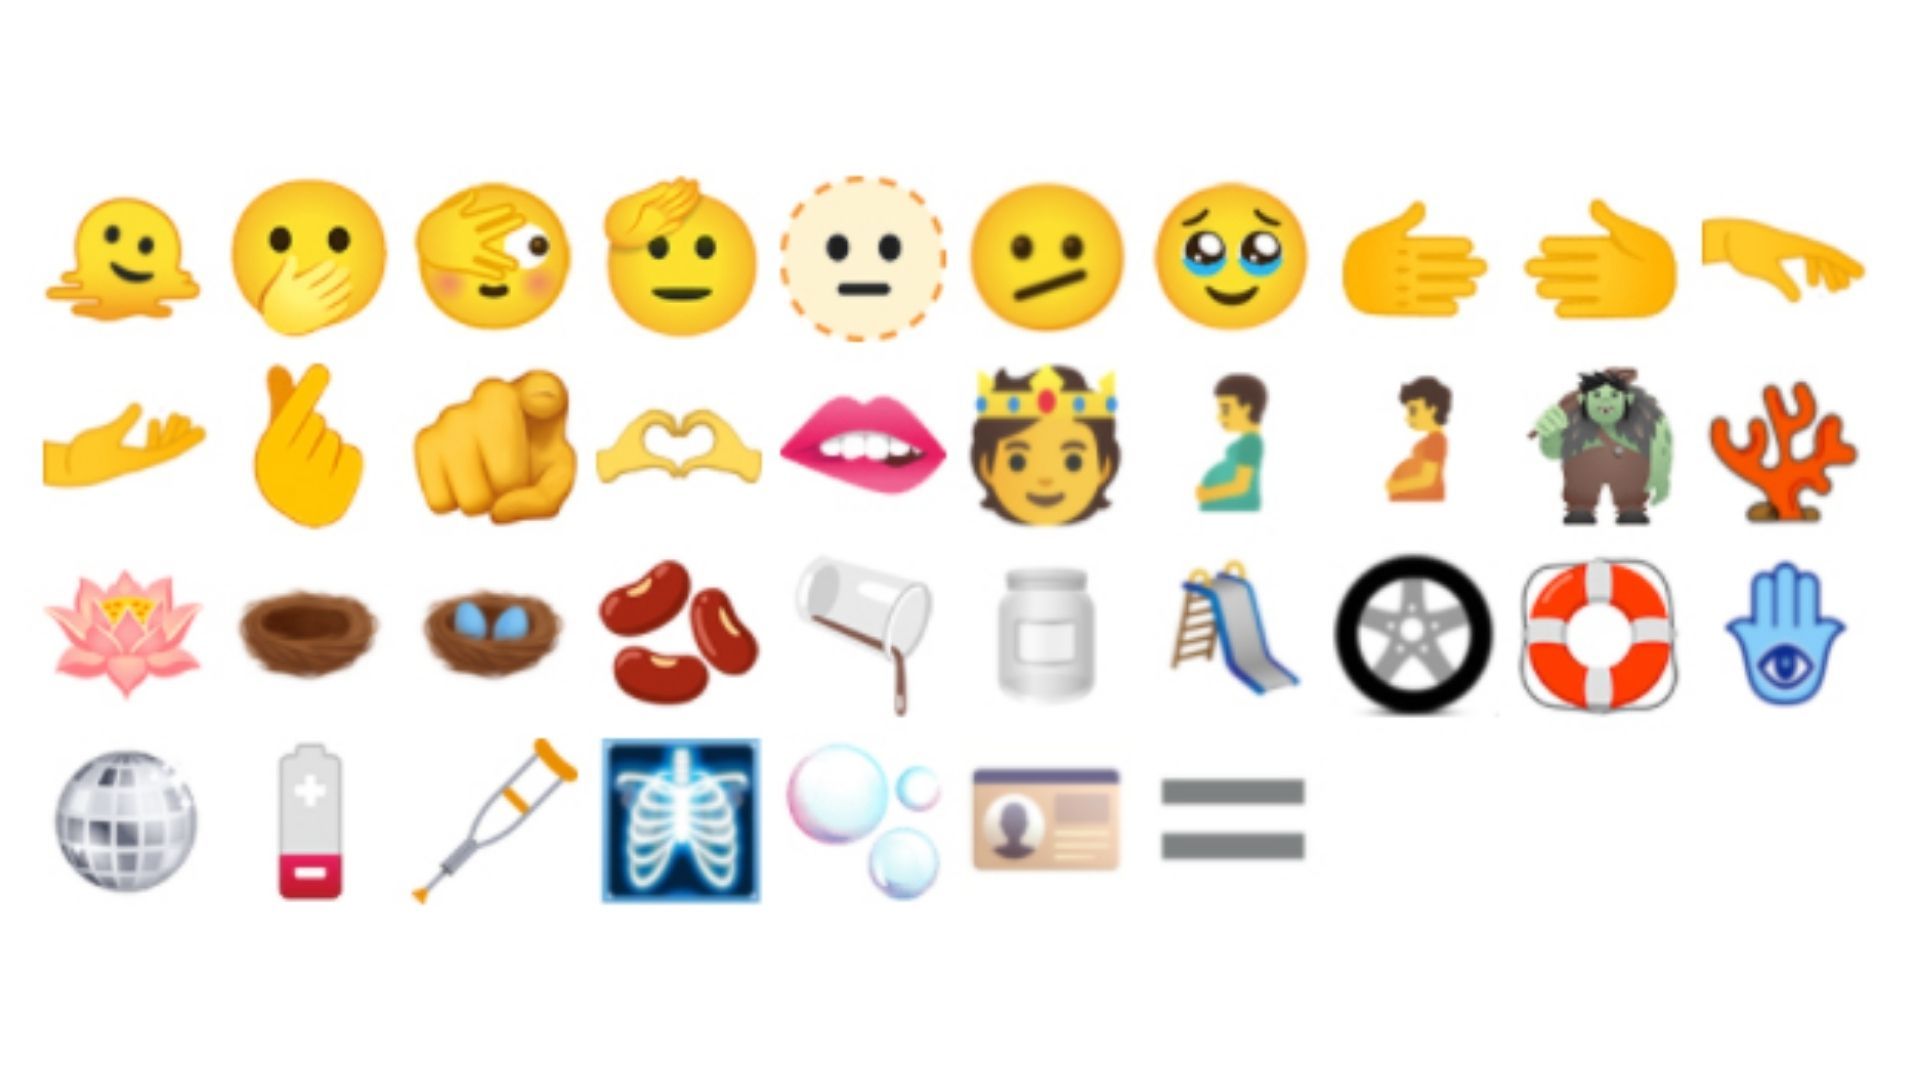 Apple's iOS 15.4 Update Brings New Emojis